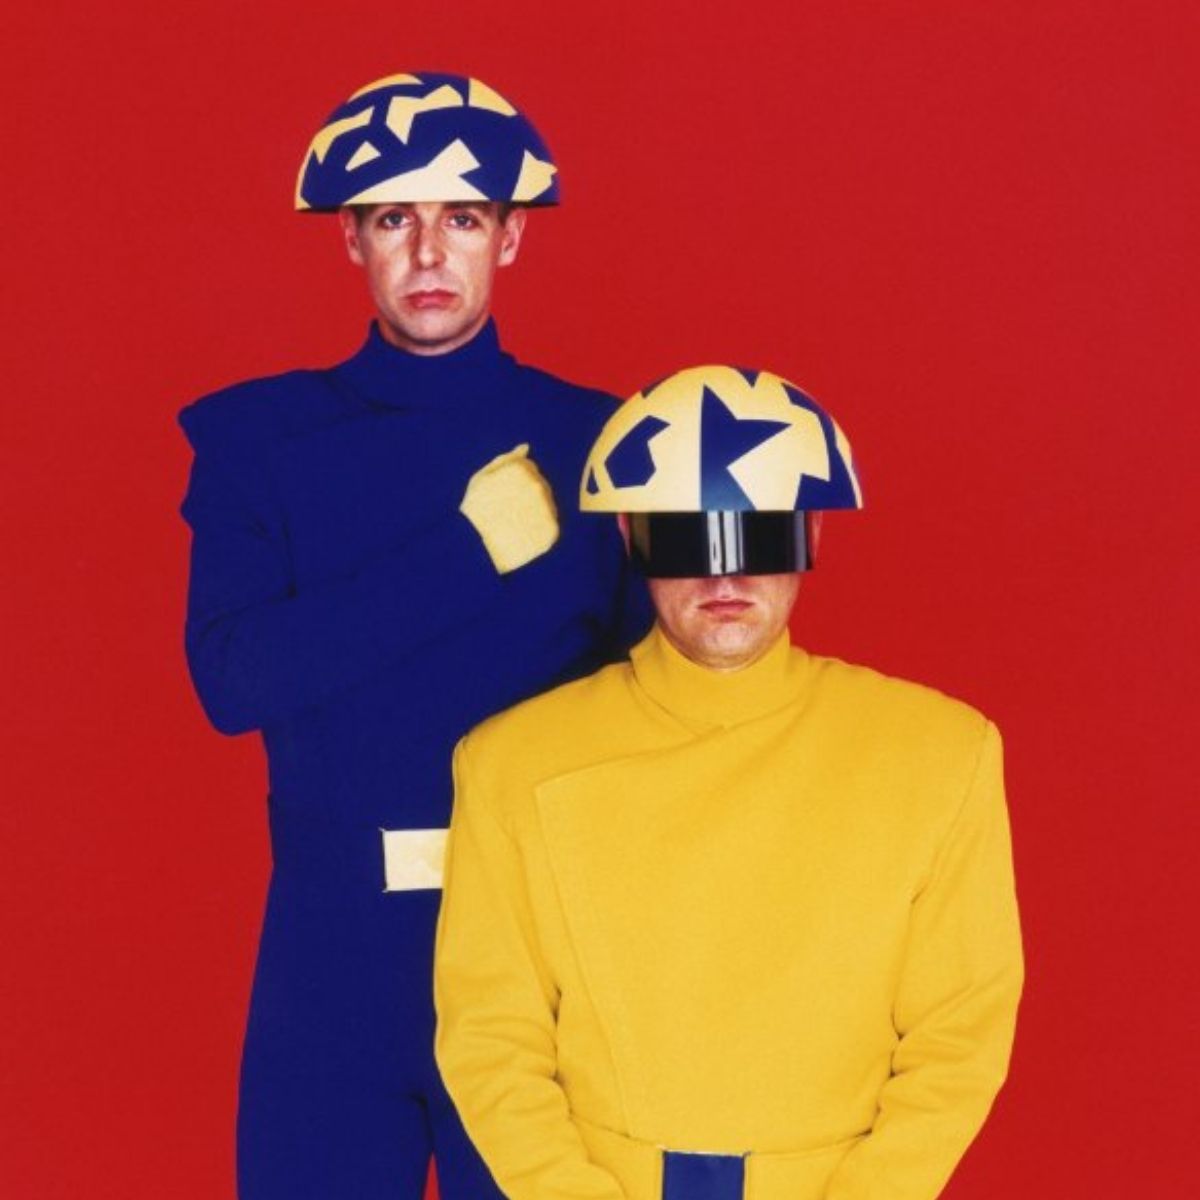 Couverture du single des Pet Shop Boys "Go West". 